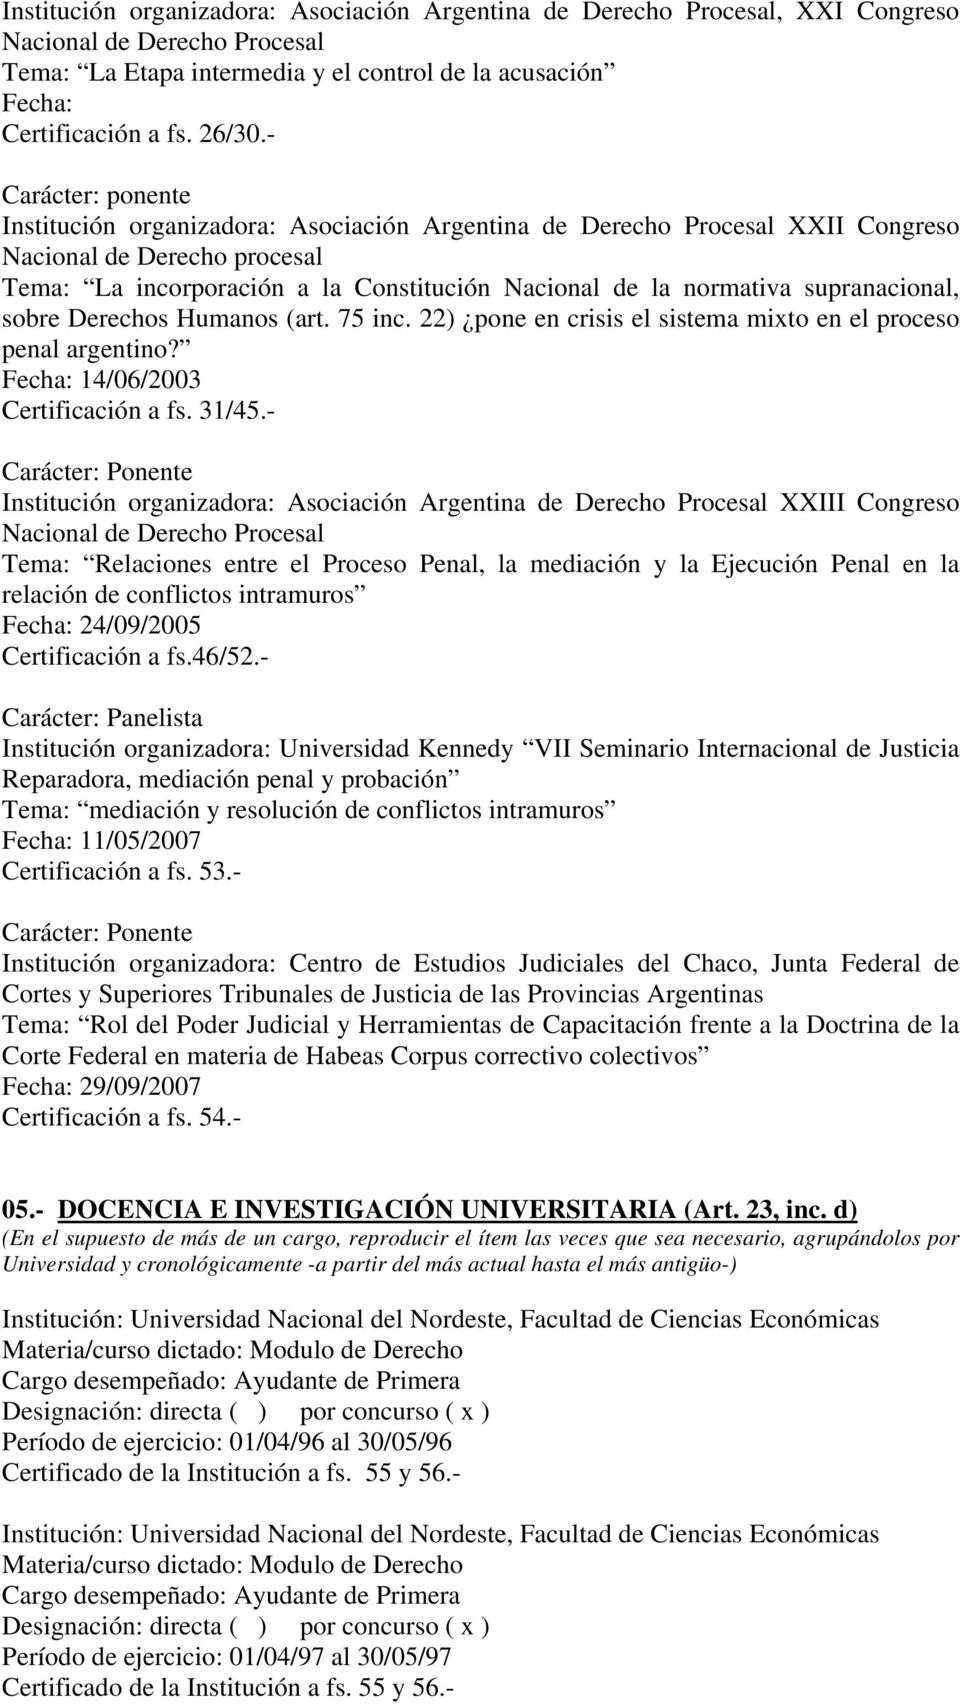 supranacional, sobre Derechos Humanos (art. 75 inc. 22) pone en crisis el sistema mixto en el proceso penal argentino? Fecha: 14/06/2003 Certificación a fs. 31/45.